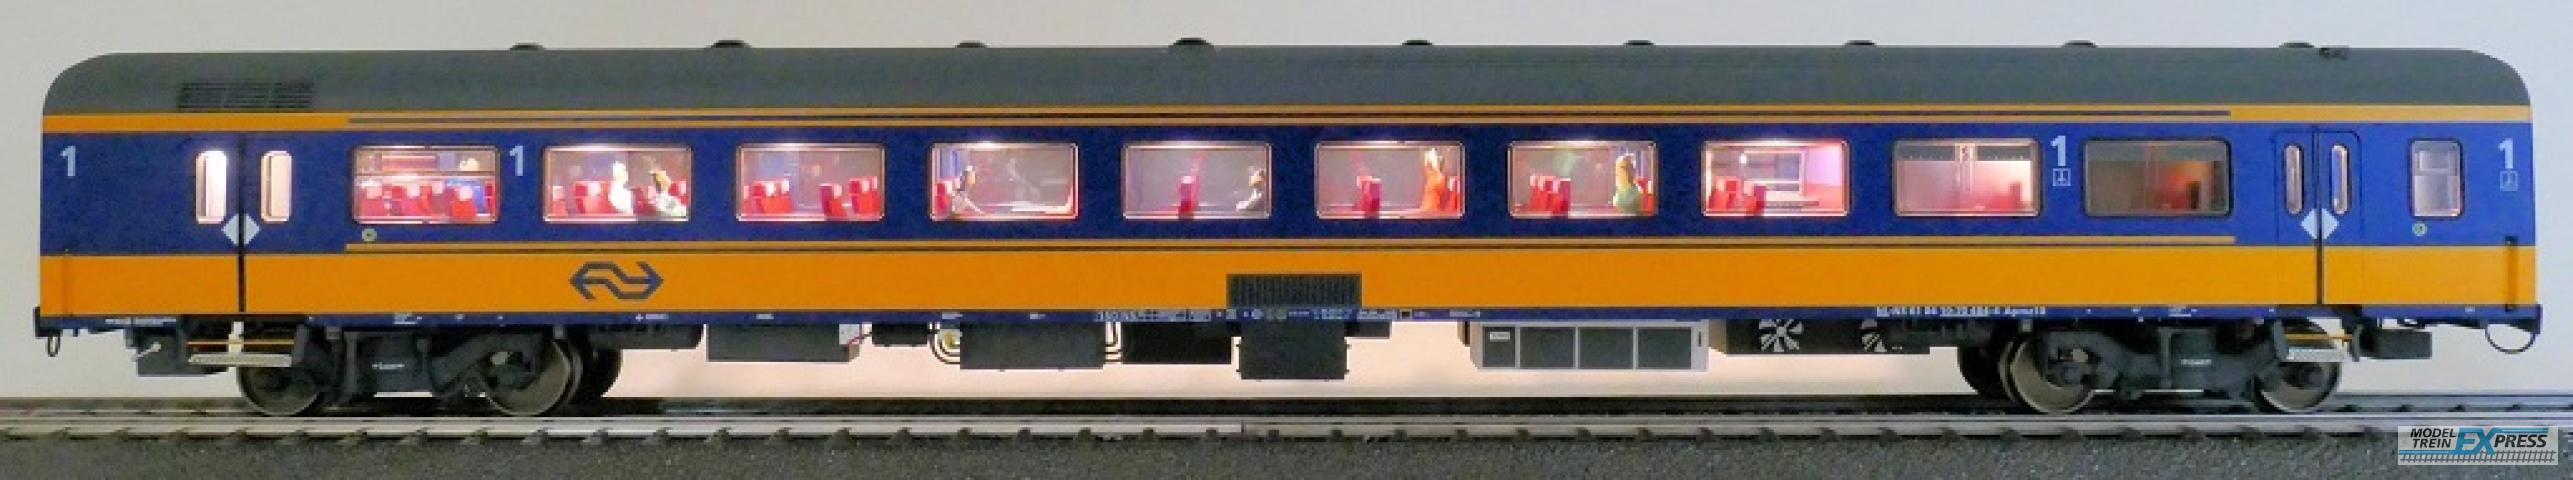 Exact-train 11151 NS ICRm Amsterdam - Breda für den Inlandseinsatz Reisezugwagen Apmz10 ( Farbe Gelb / Blau) mit Beleuchtung und Figuren, Ep. VI